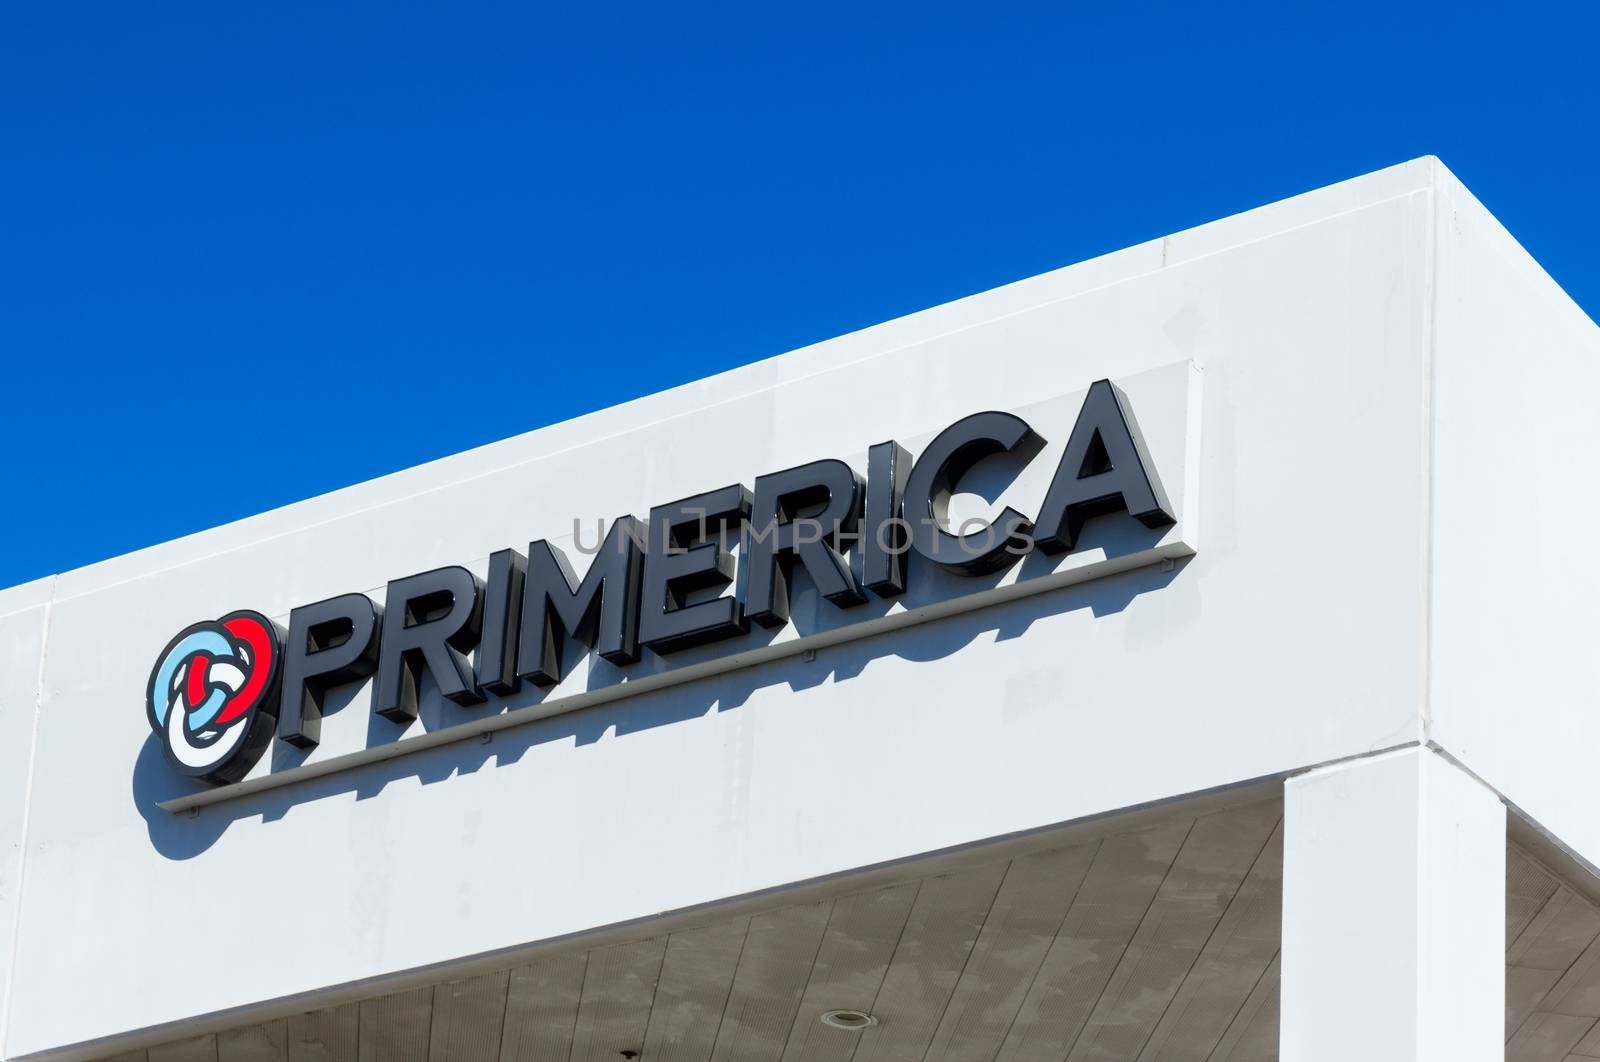 VALENCIA CA/USA - DECEMBER 26, 2015: Primerica exterior logo and emblem. Primerica, Inc. is a distributor of financial services.